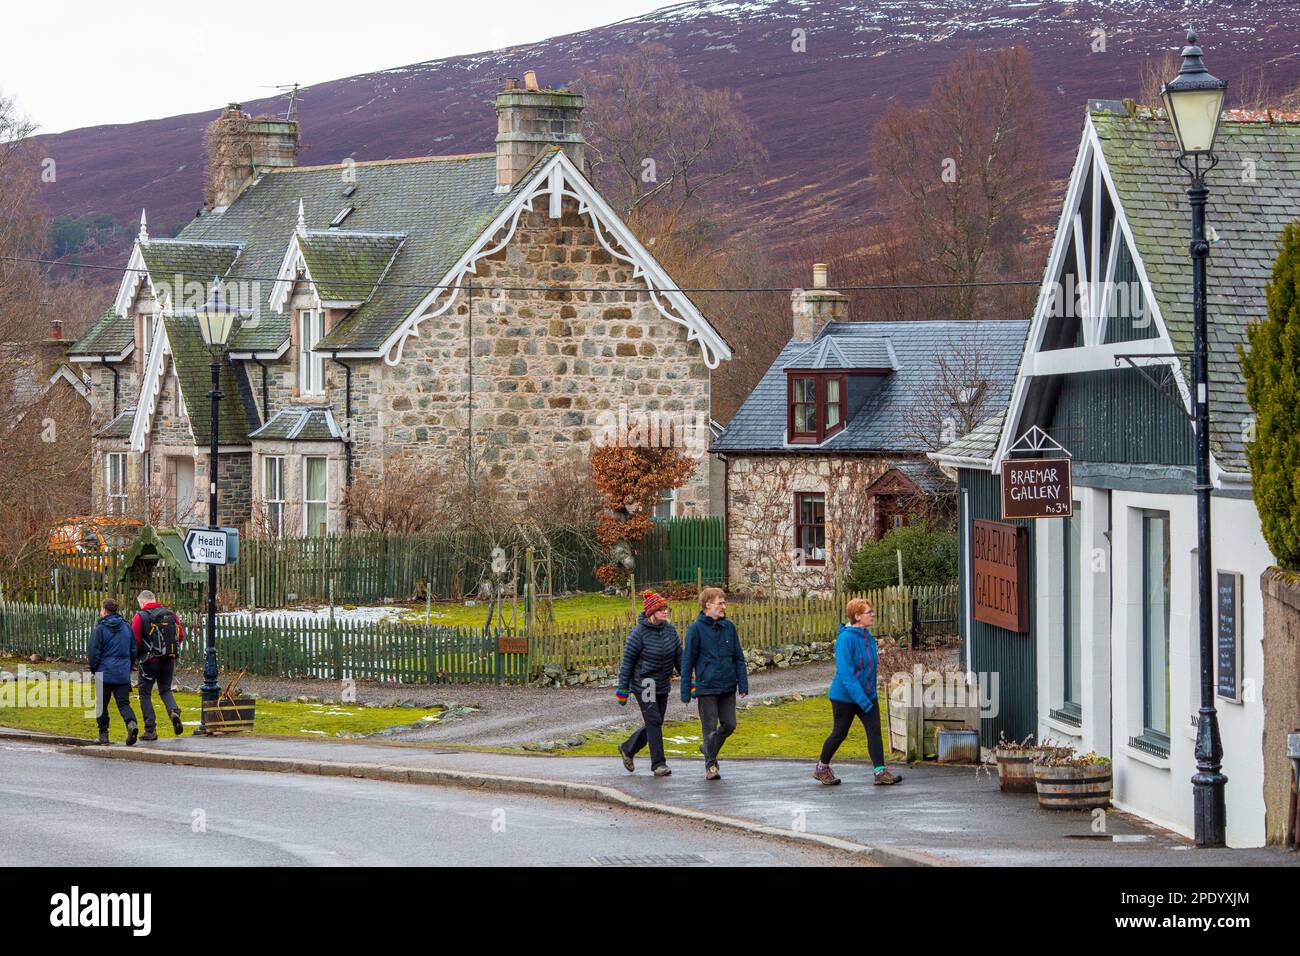 Promenade touristique dans le village de Braemar à Aberdeenshire, Écosse Banque D'Images